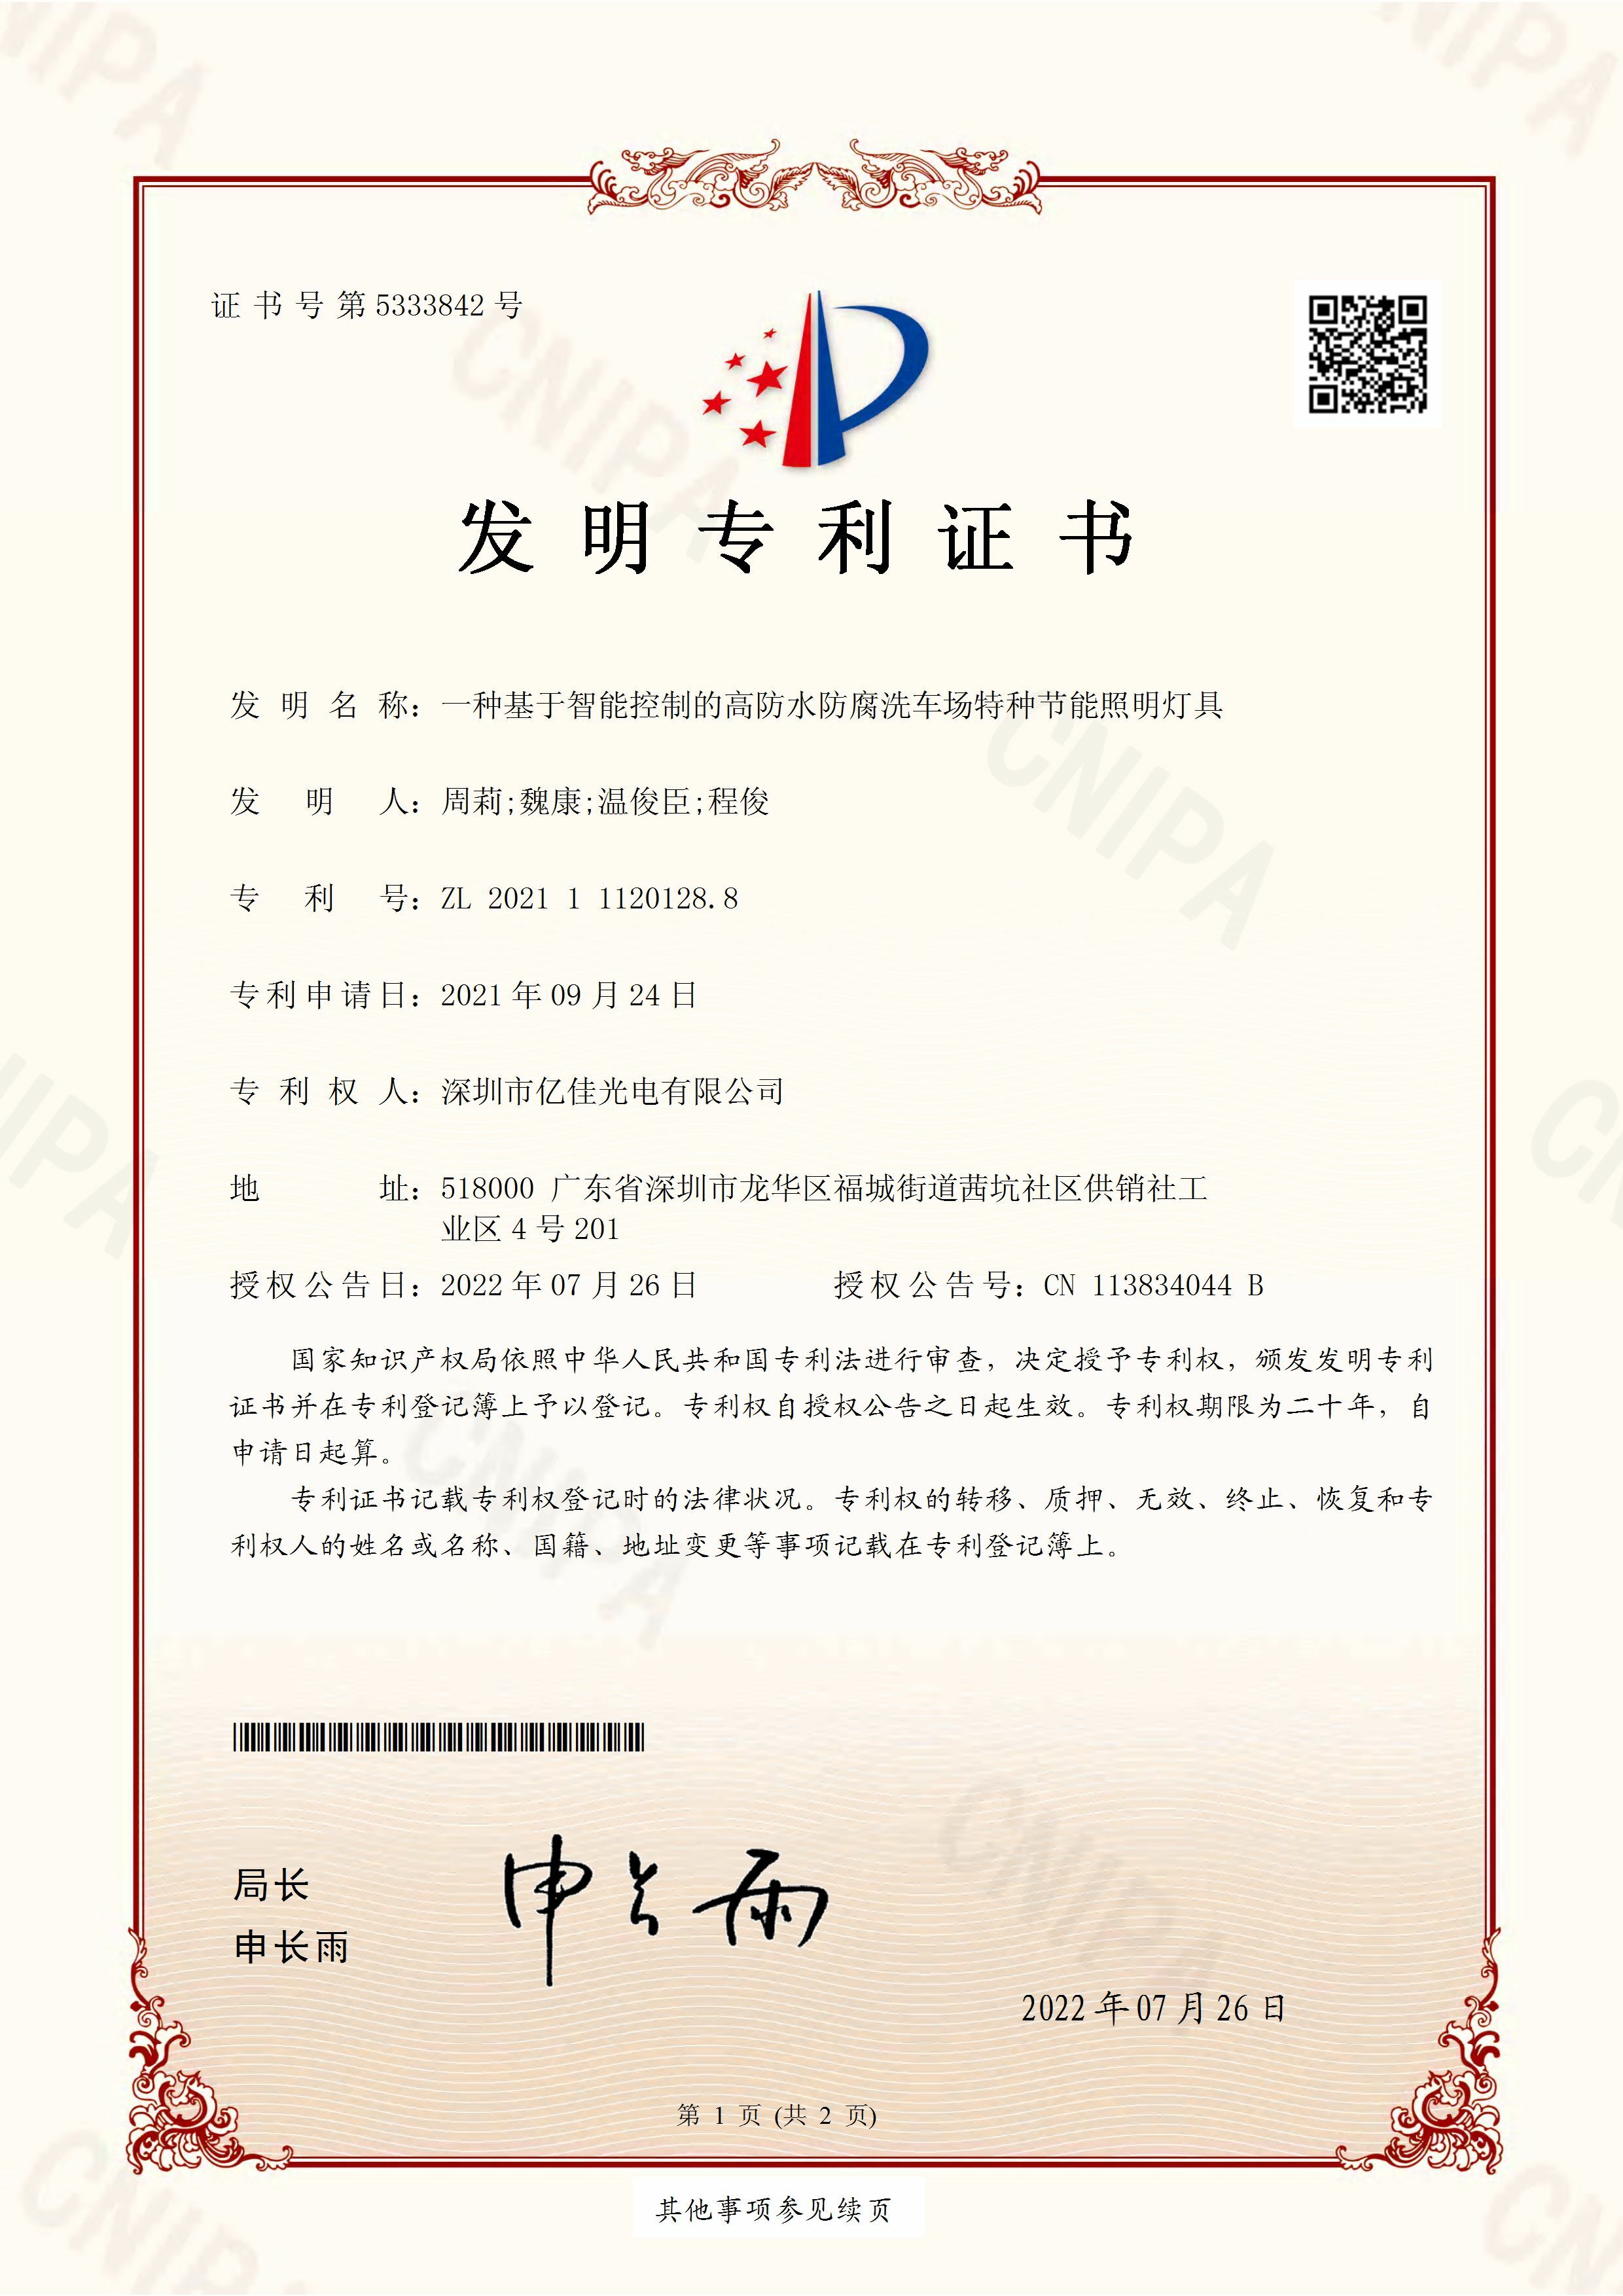 深圳市k8凯发光电有限公司洗车场节能照明灯发明专利申请获得通过